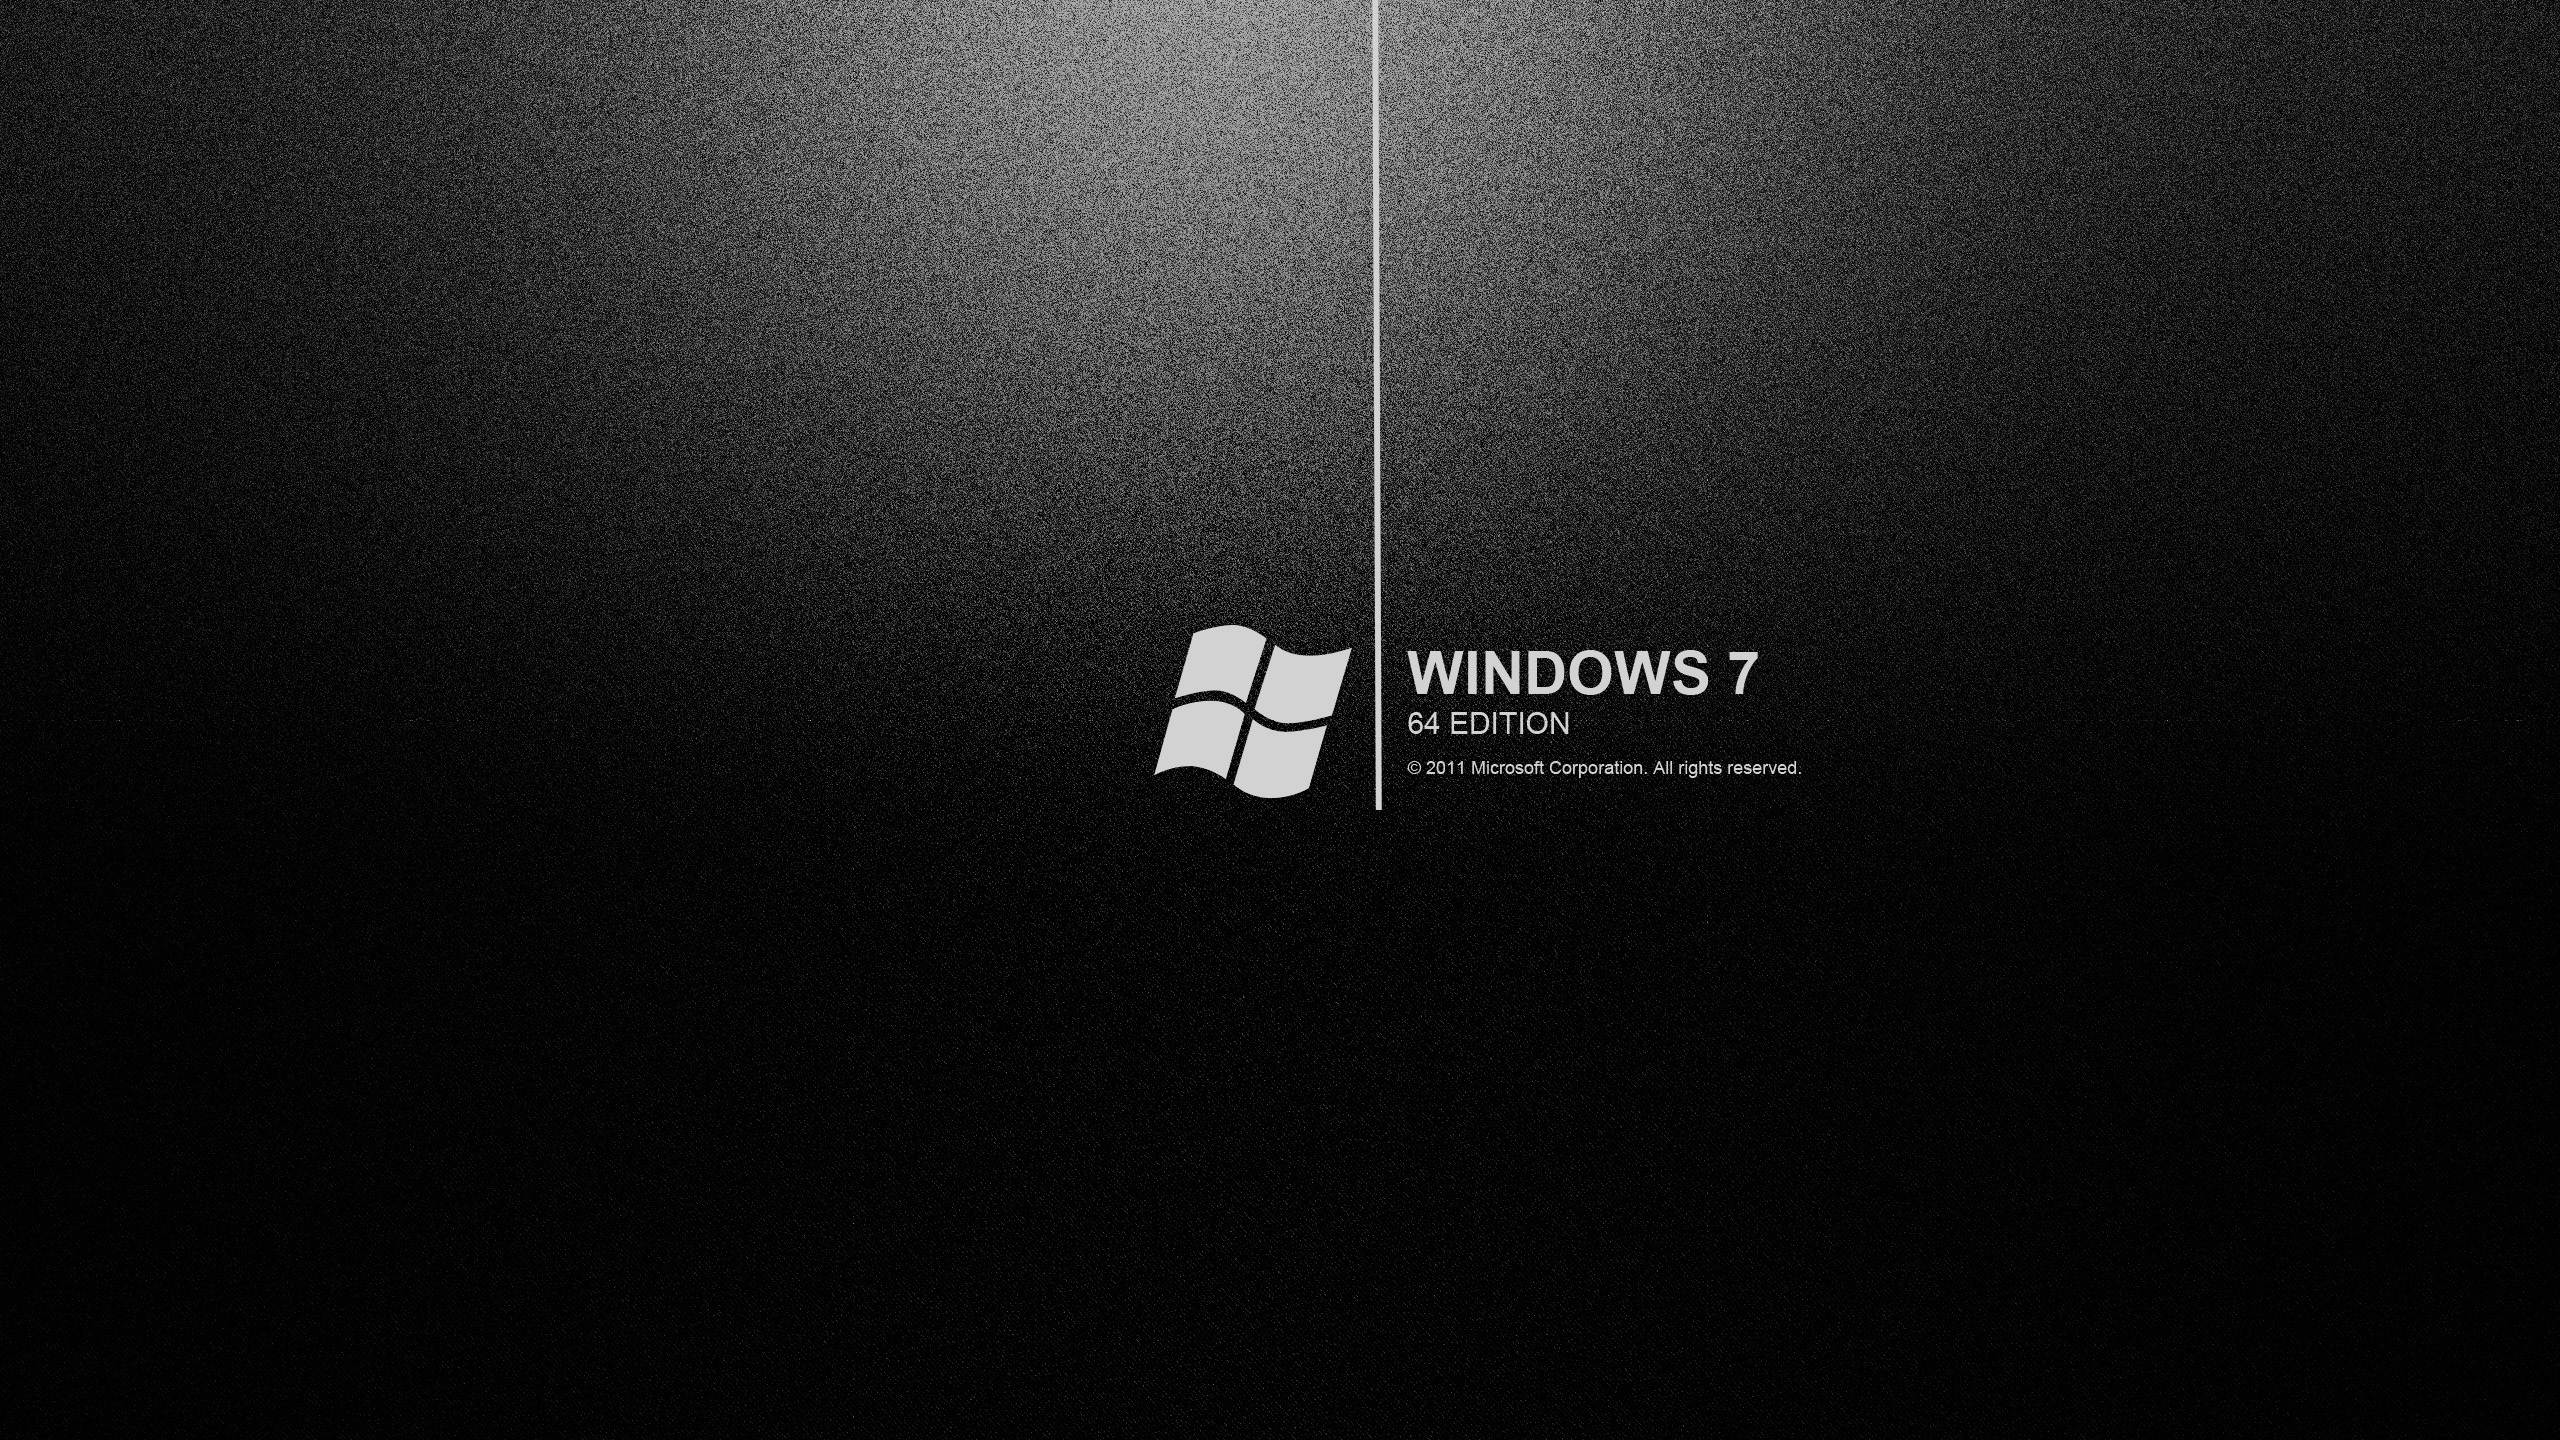 Windows 7 black wallpapers backgrounds dark hd desktop wallpapersjpg